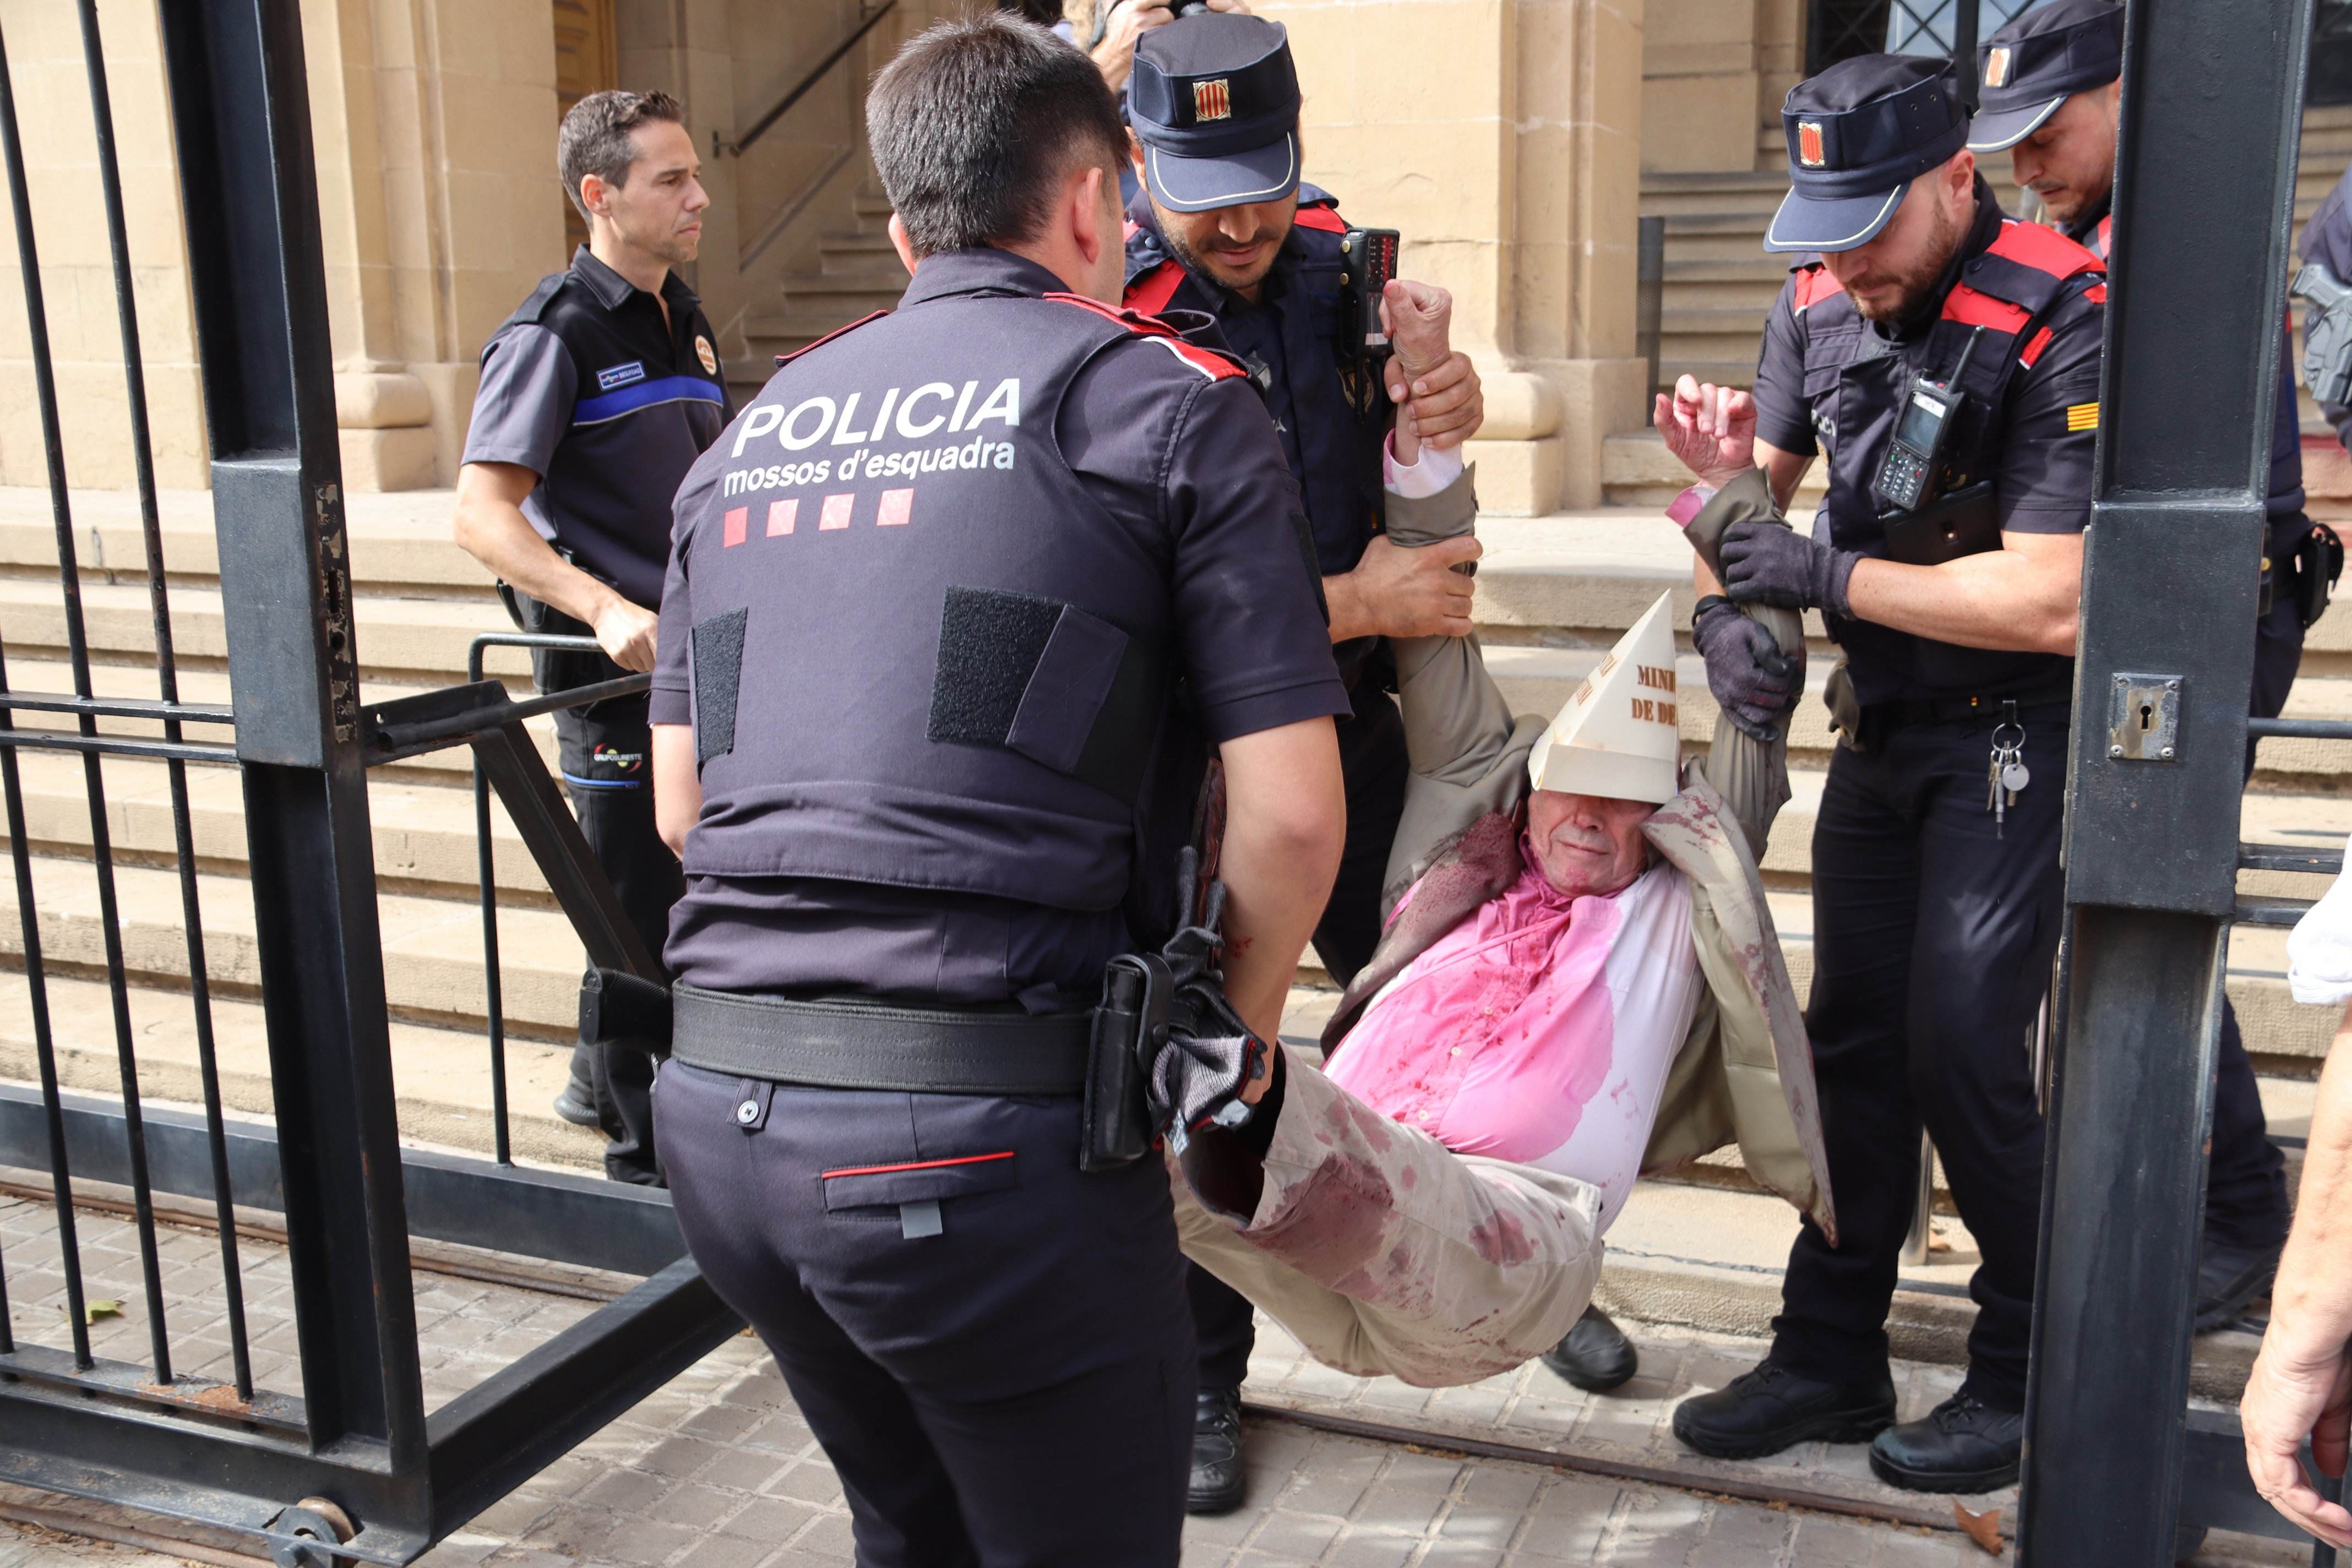 Pacifistes protesten contra Pedro Sánchez amb sang falsa a Barcelona i els Mossos els desallotgen